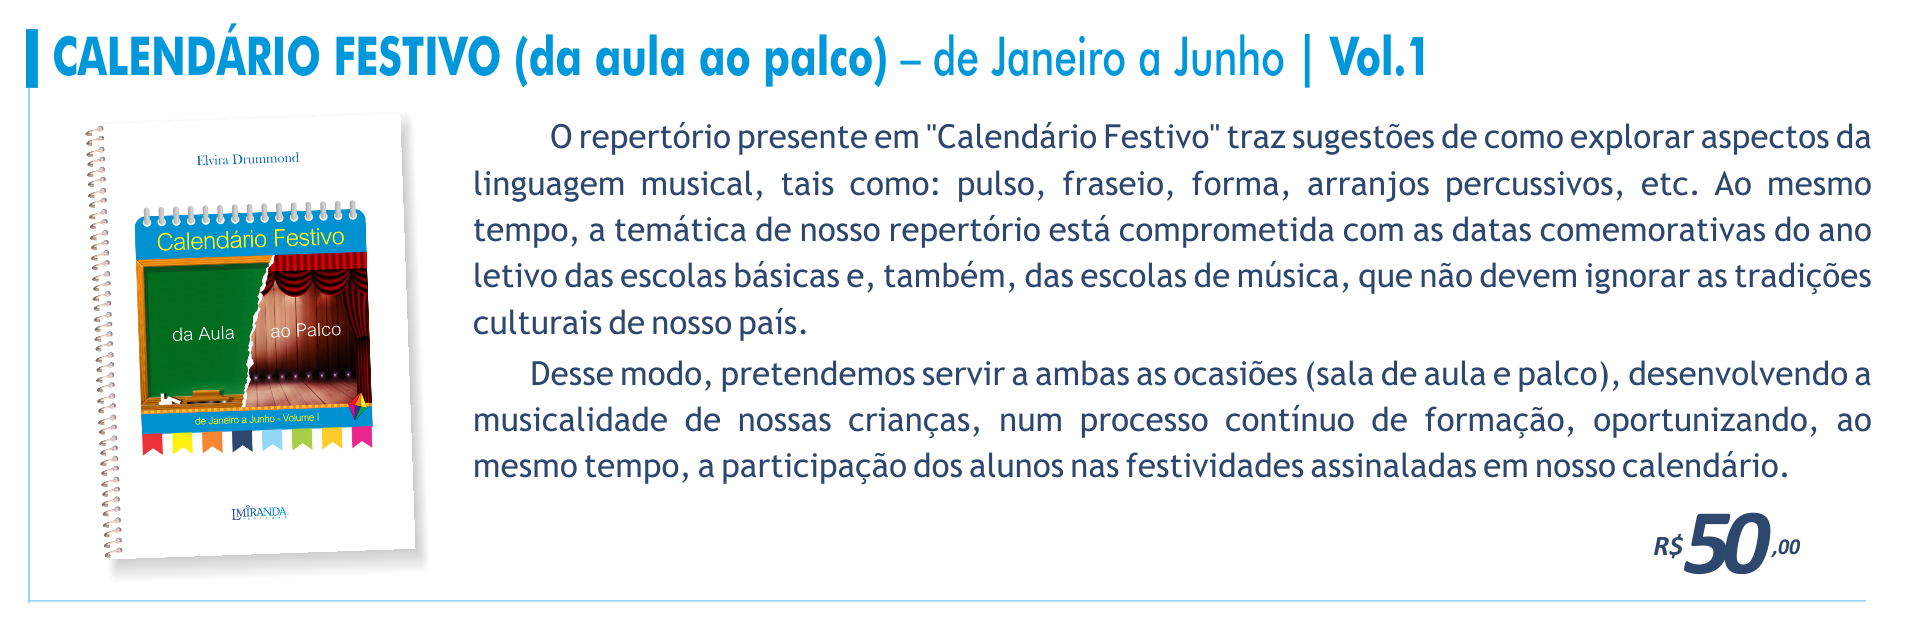 Calendário Festivo vol.1 - De Janeiro a Julho